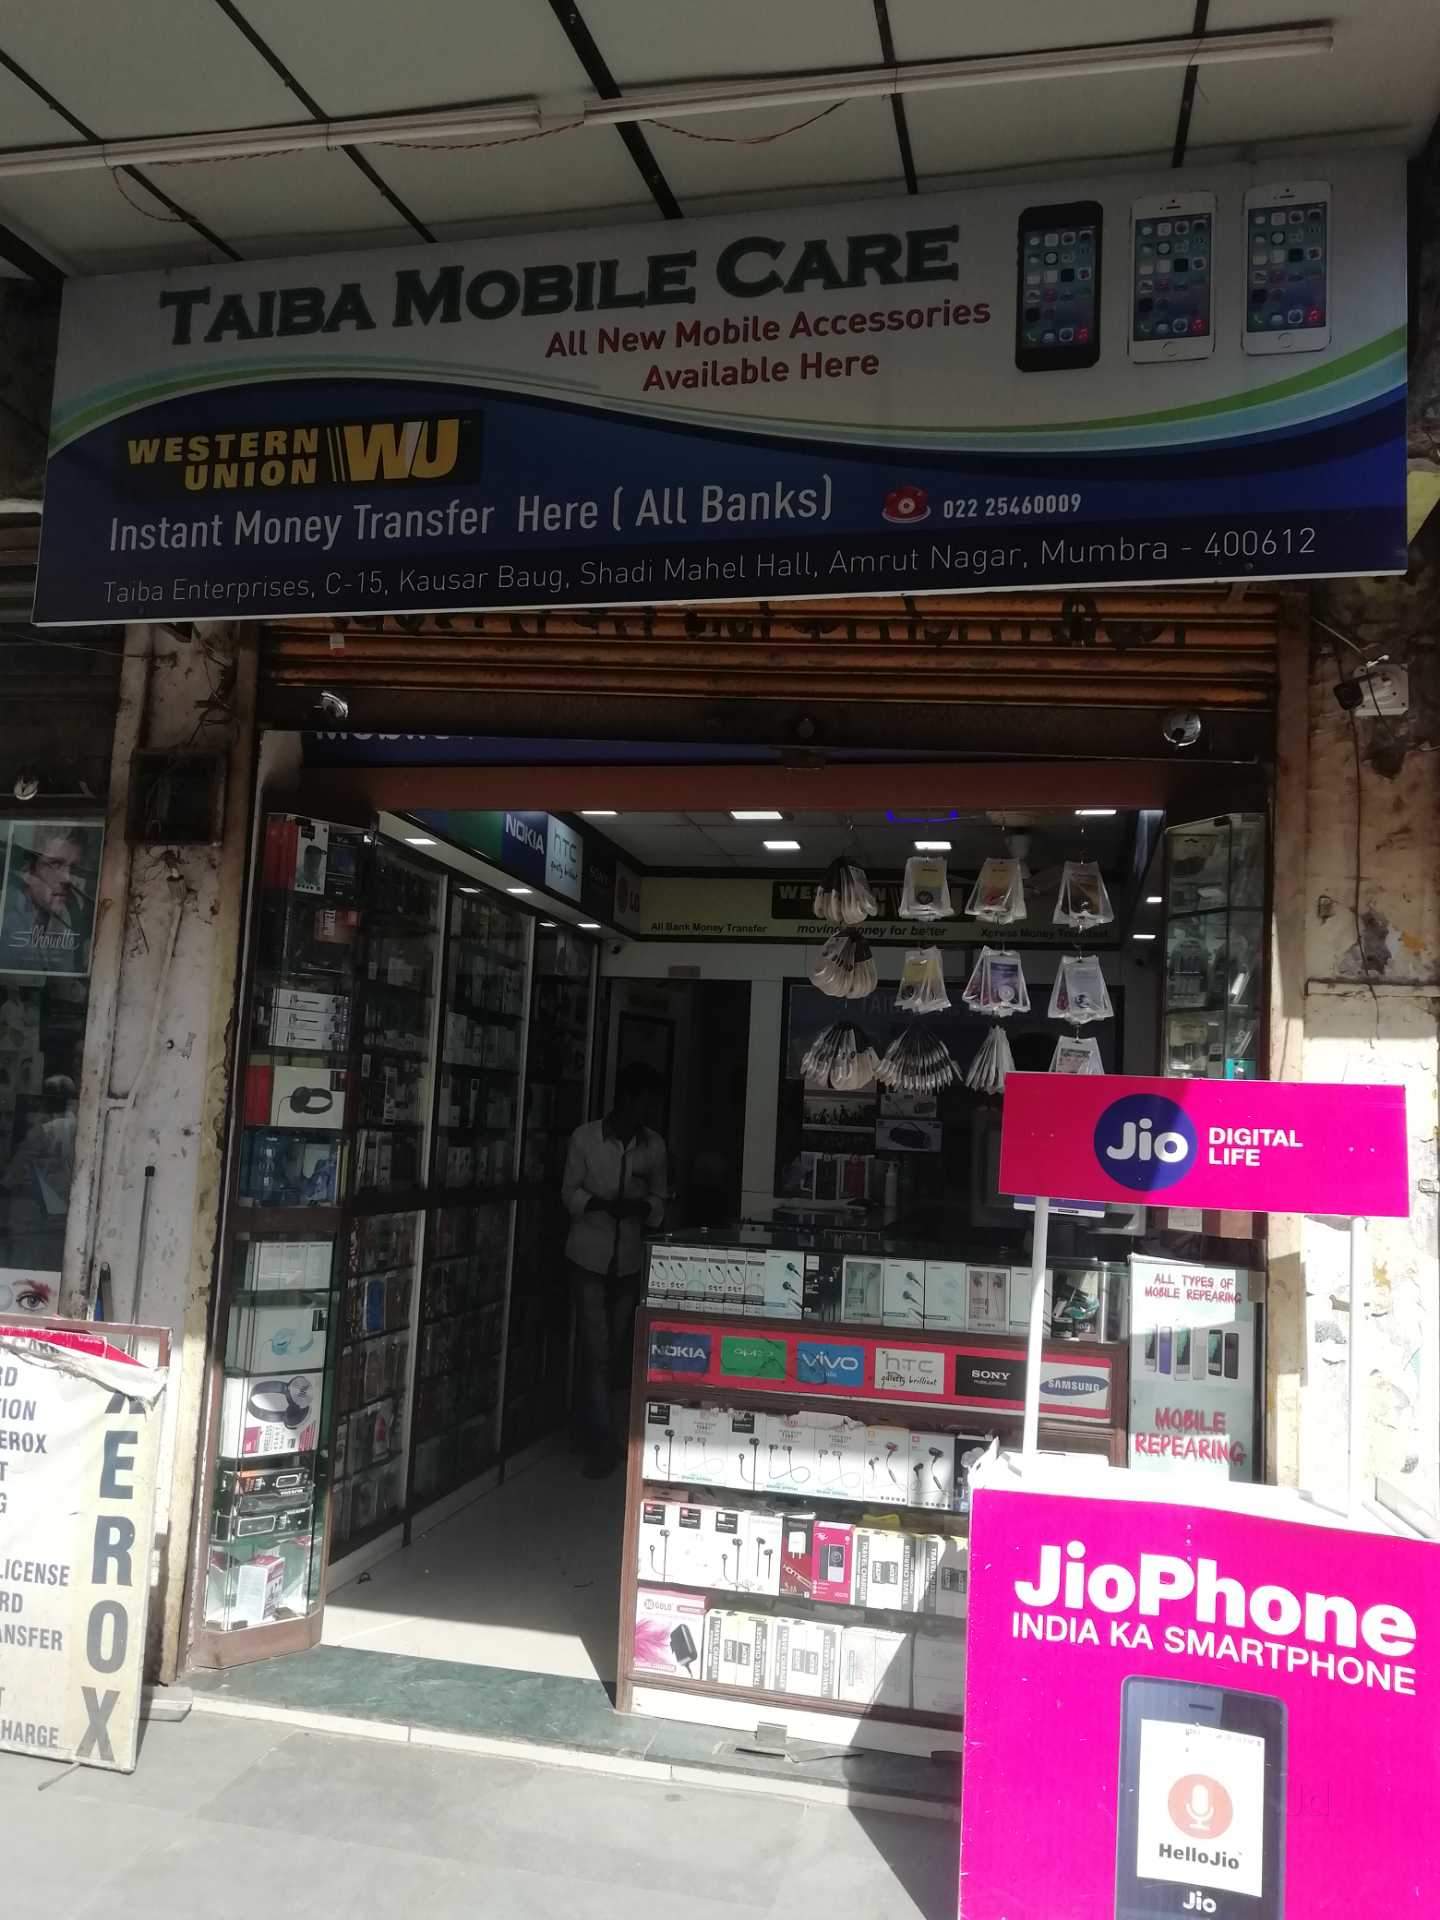 Taiba Mobile Care Photos, Amrut Nagar Mumbra, Mumbai - Newsagent's Shop , HD Wallpaper & Backgrounds